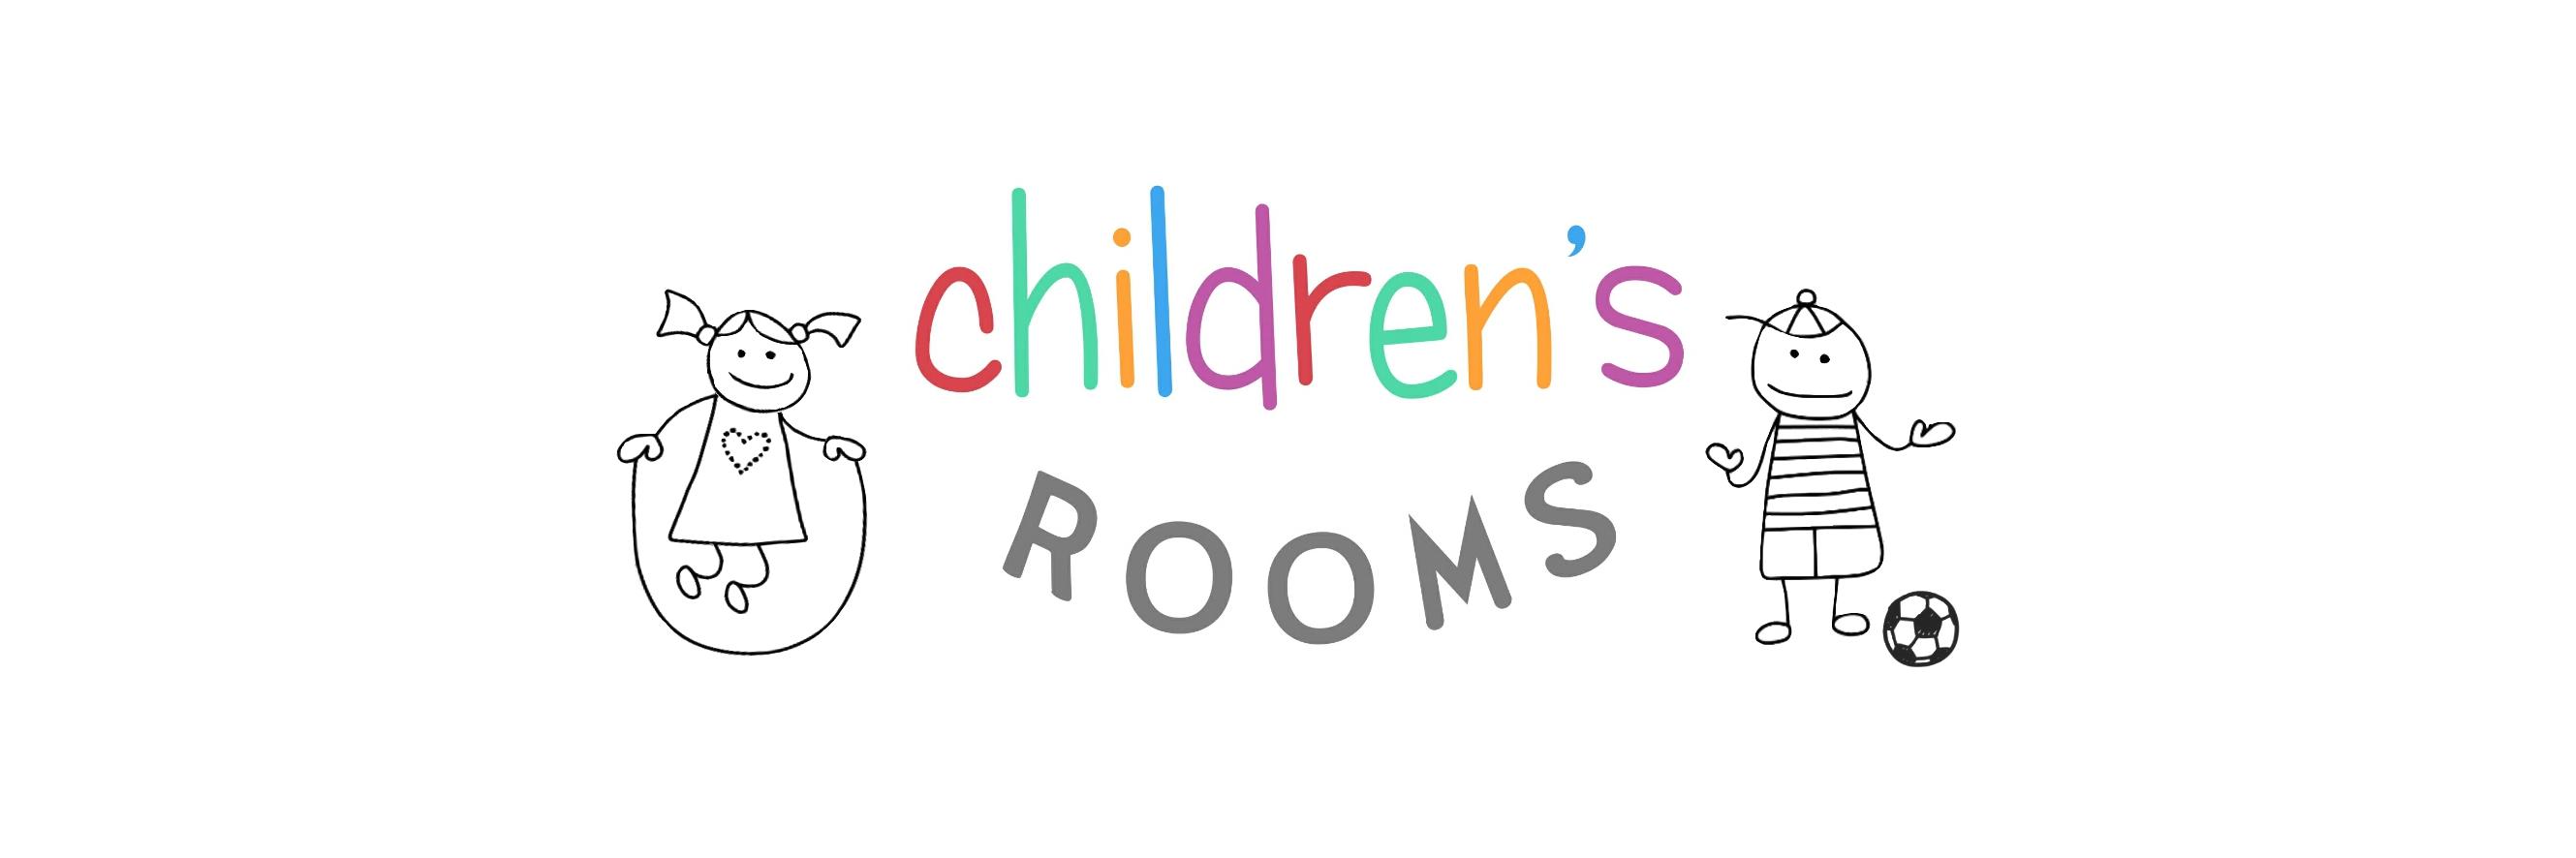 children's rooms